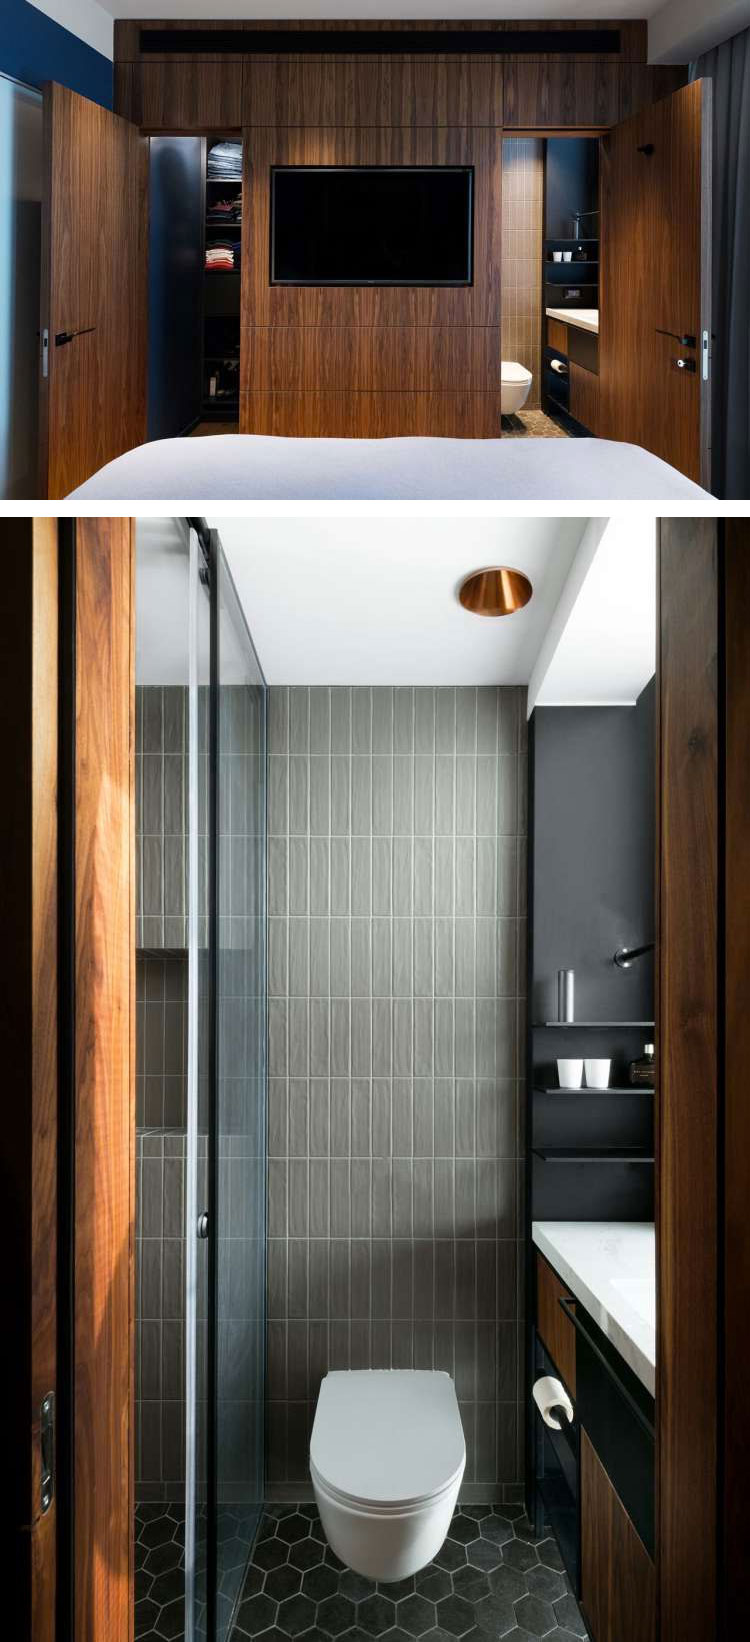 Interieur- en architectenbureau RUST ontwierp deze slaapkamer met ensuite badkamer en inloopkast.